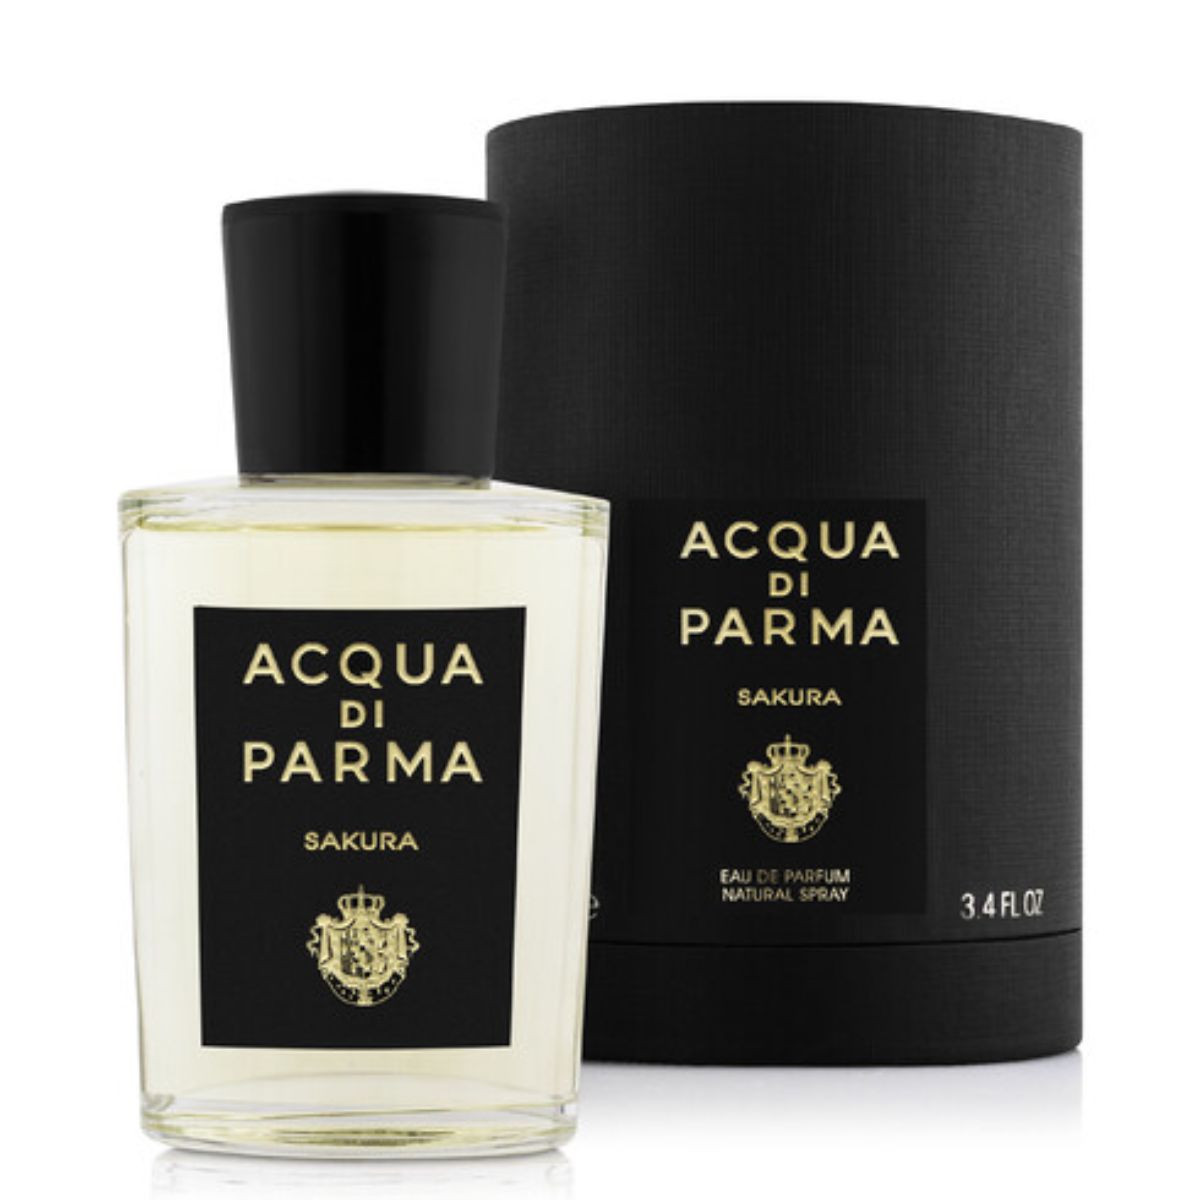 Acqua Di Parma Signature Sakura Eau De Parfum